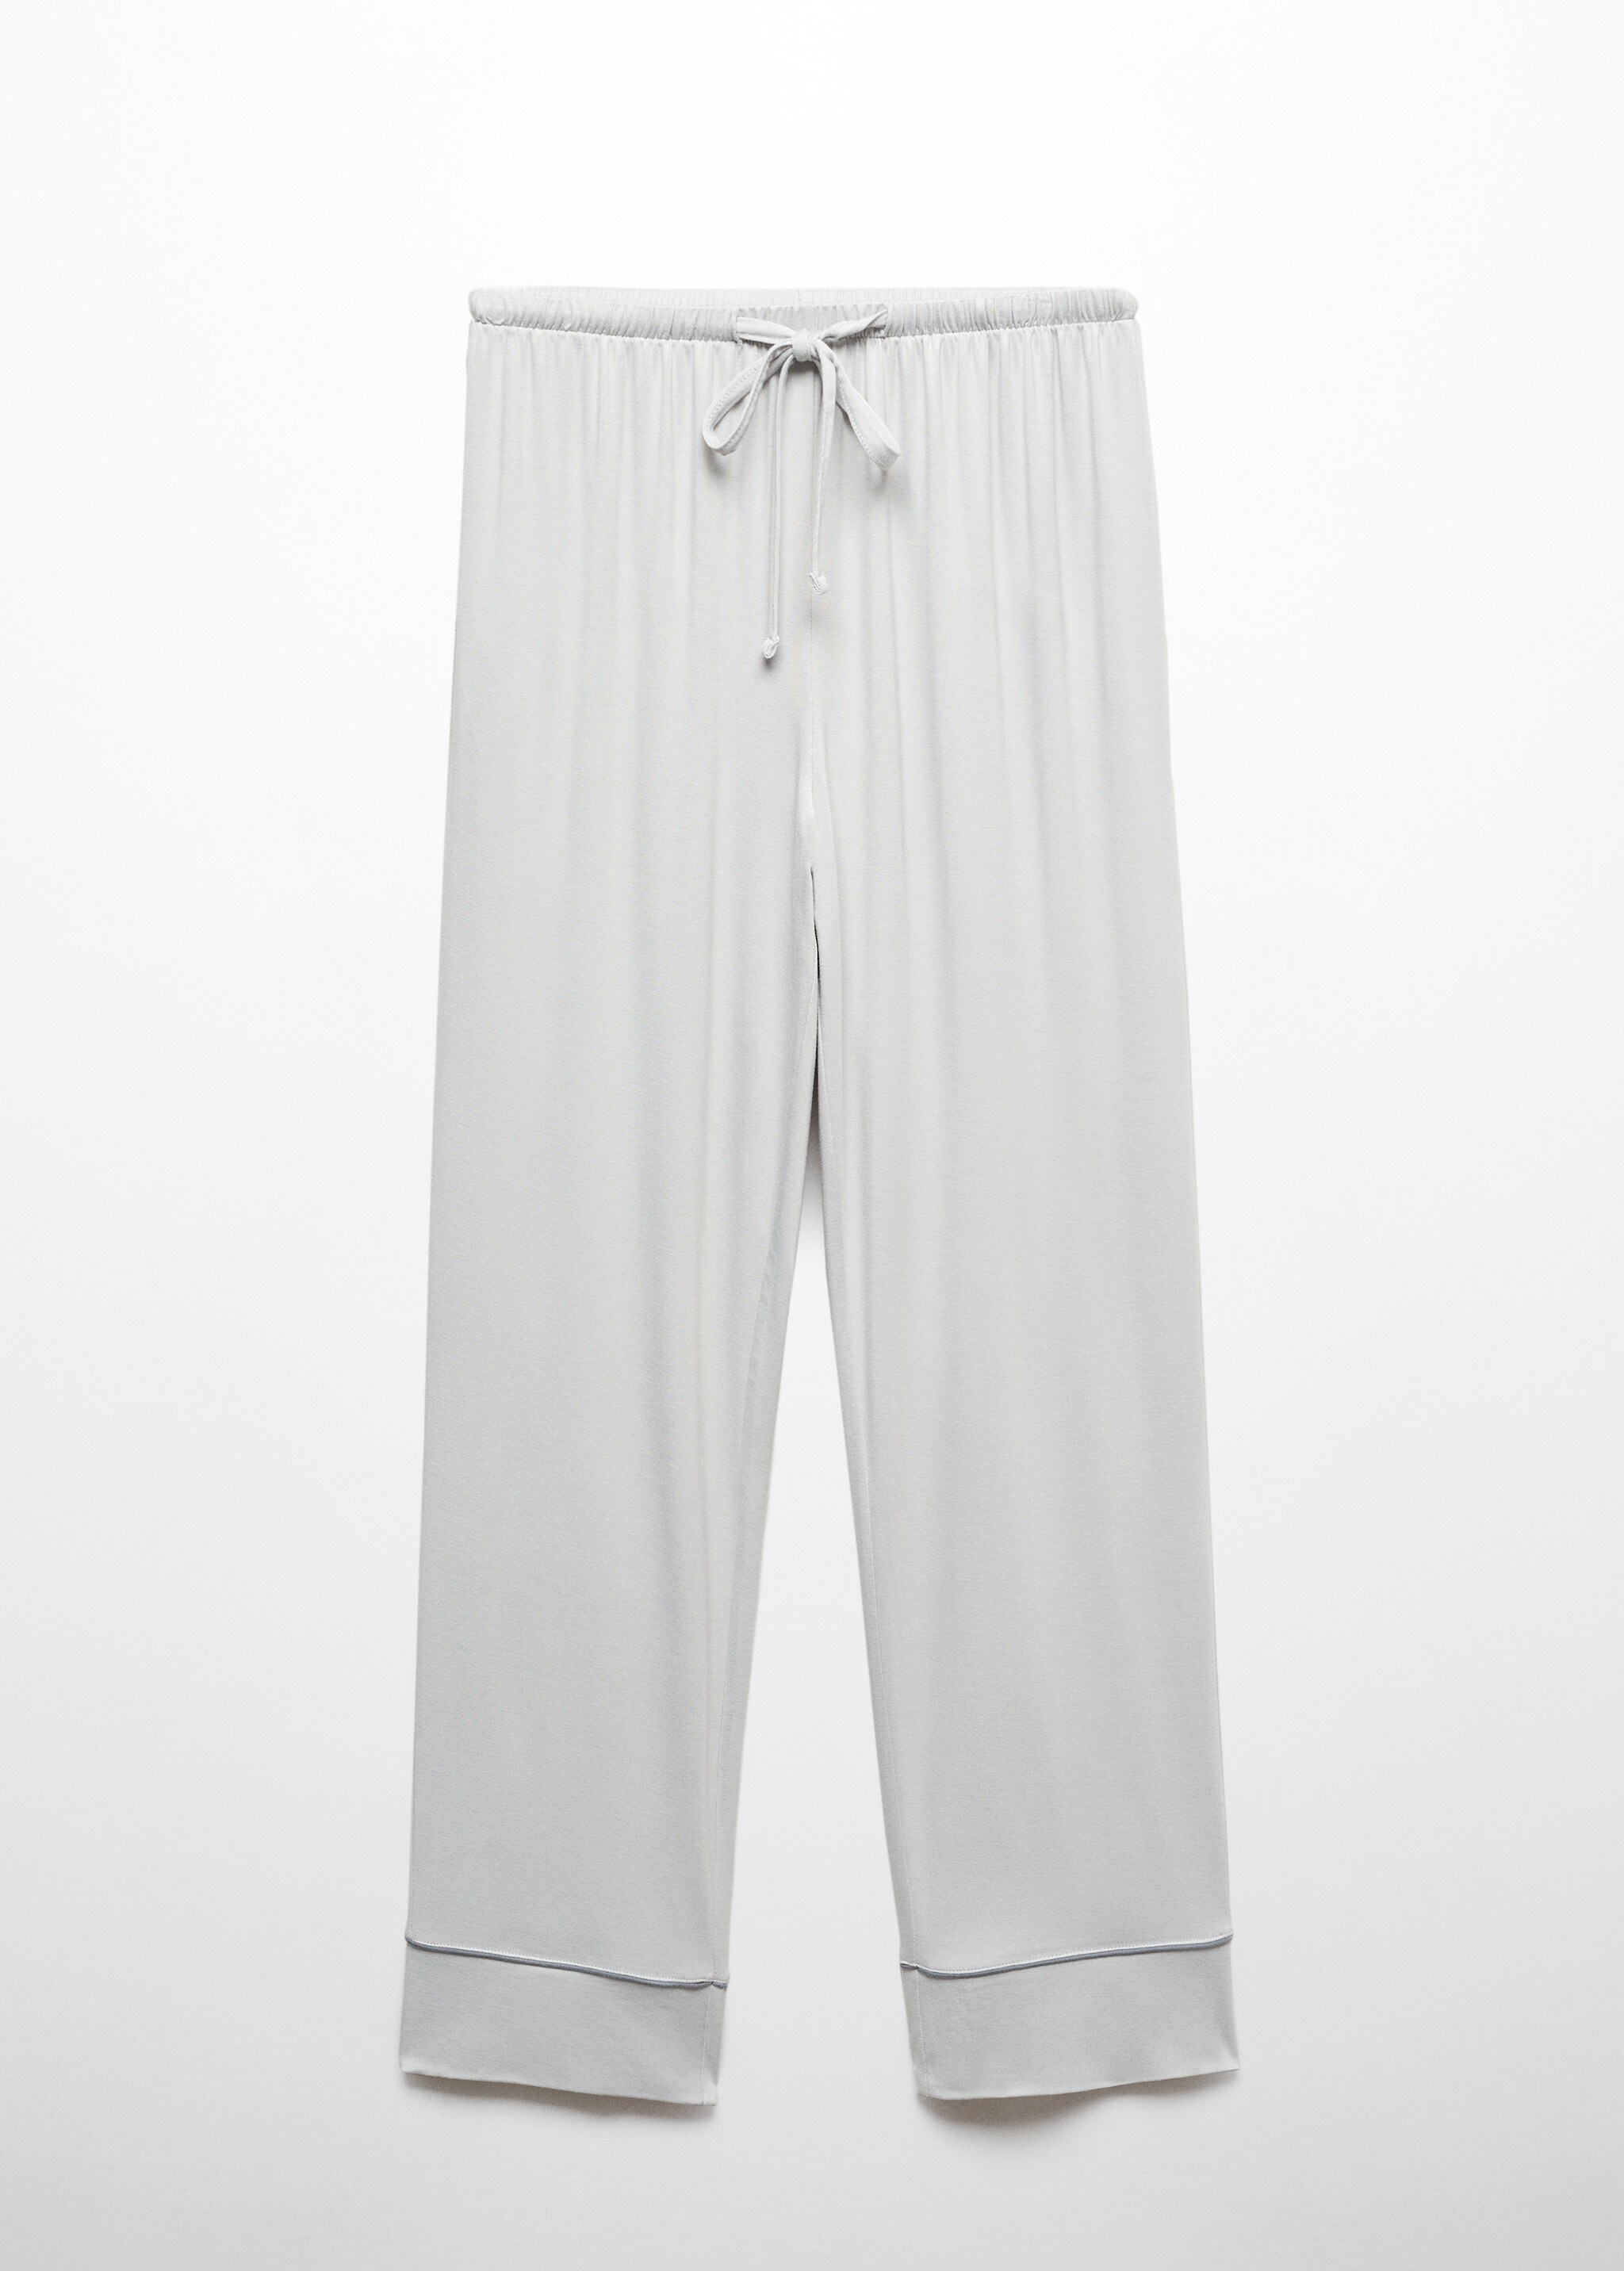 Пижамные брюки с окантовкой  - Изделие без модели